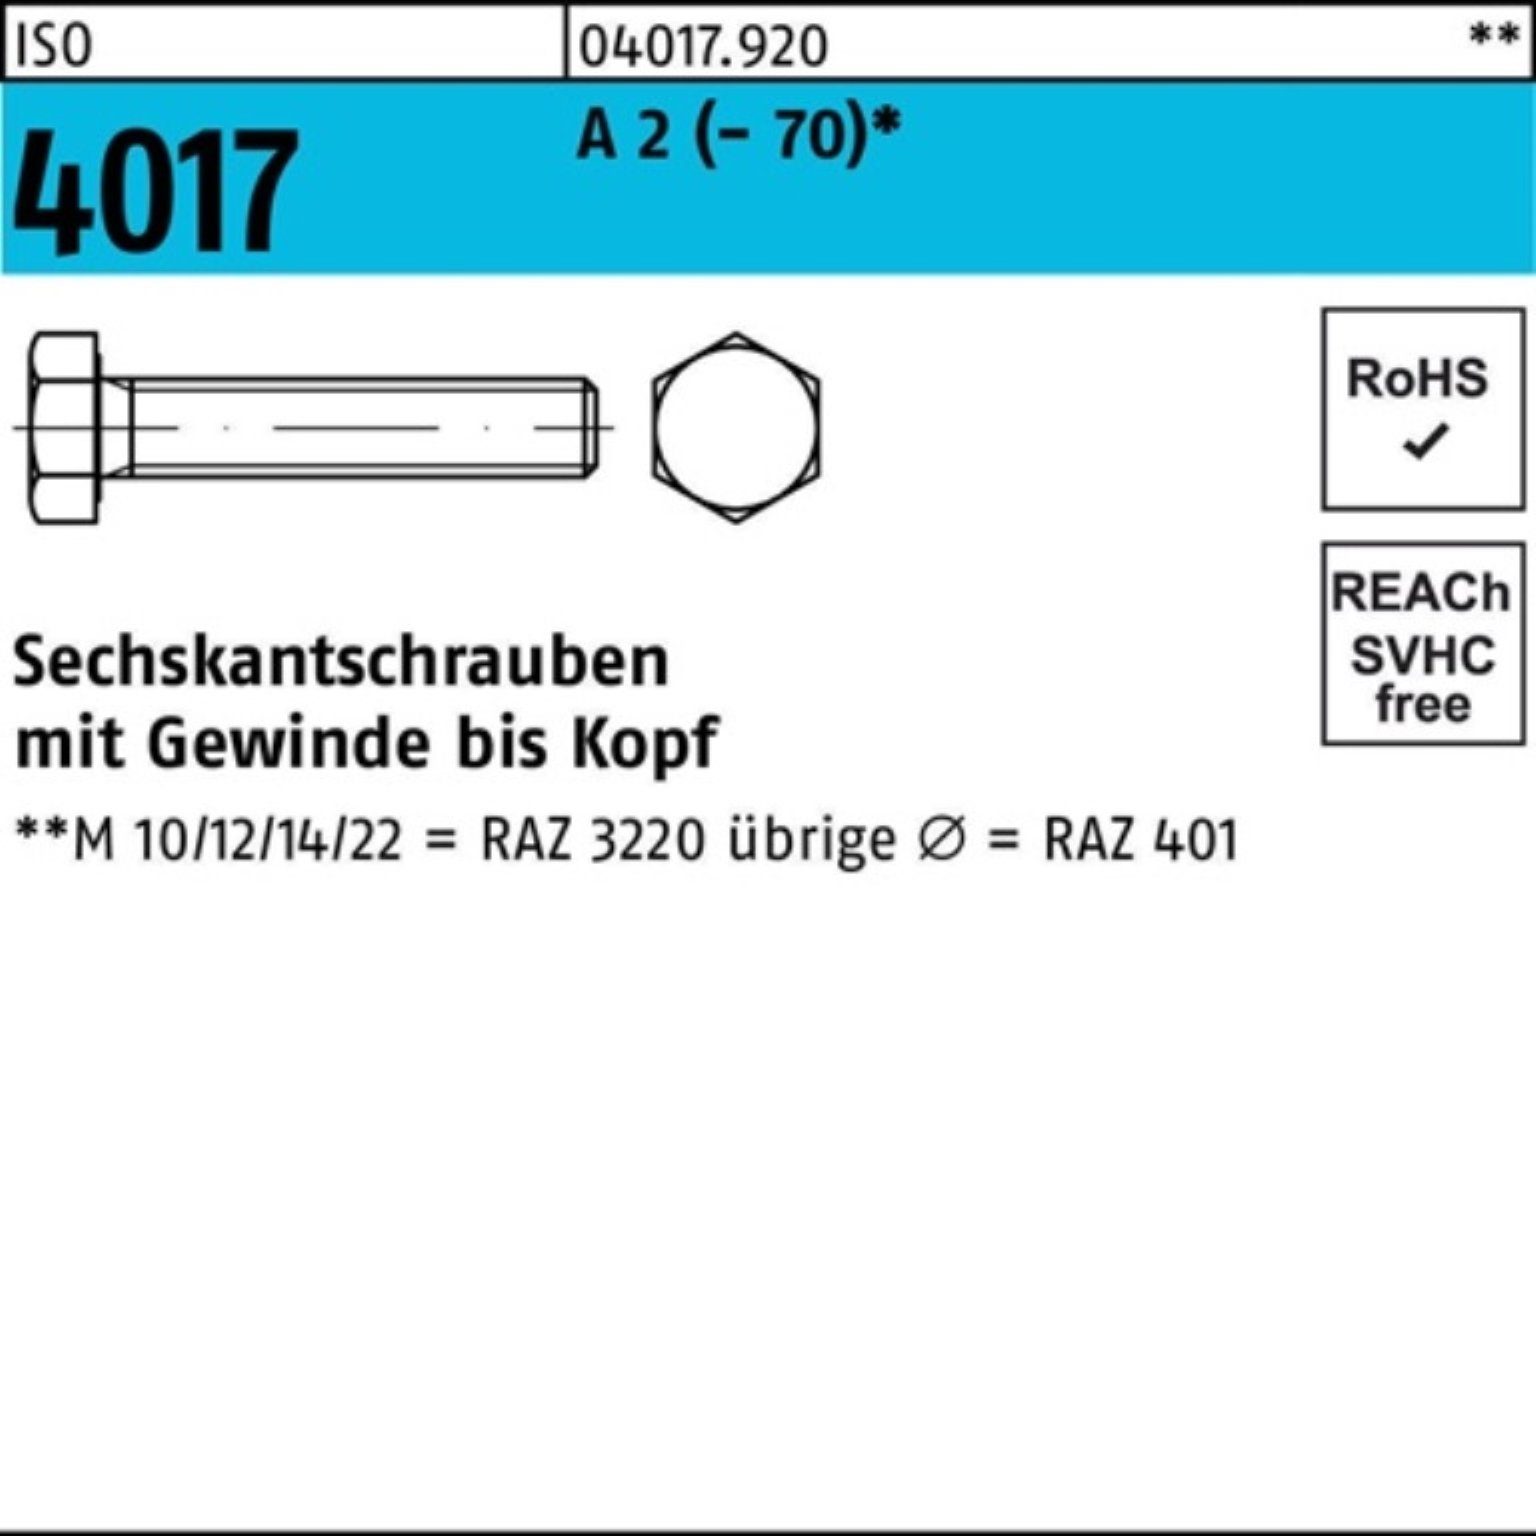 Bufab Sechskantschraube 100er Pack Sechskantschraube ISO 4017 VG M3x 35 A 2 (70) 100 Stück